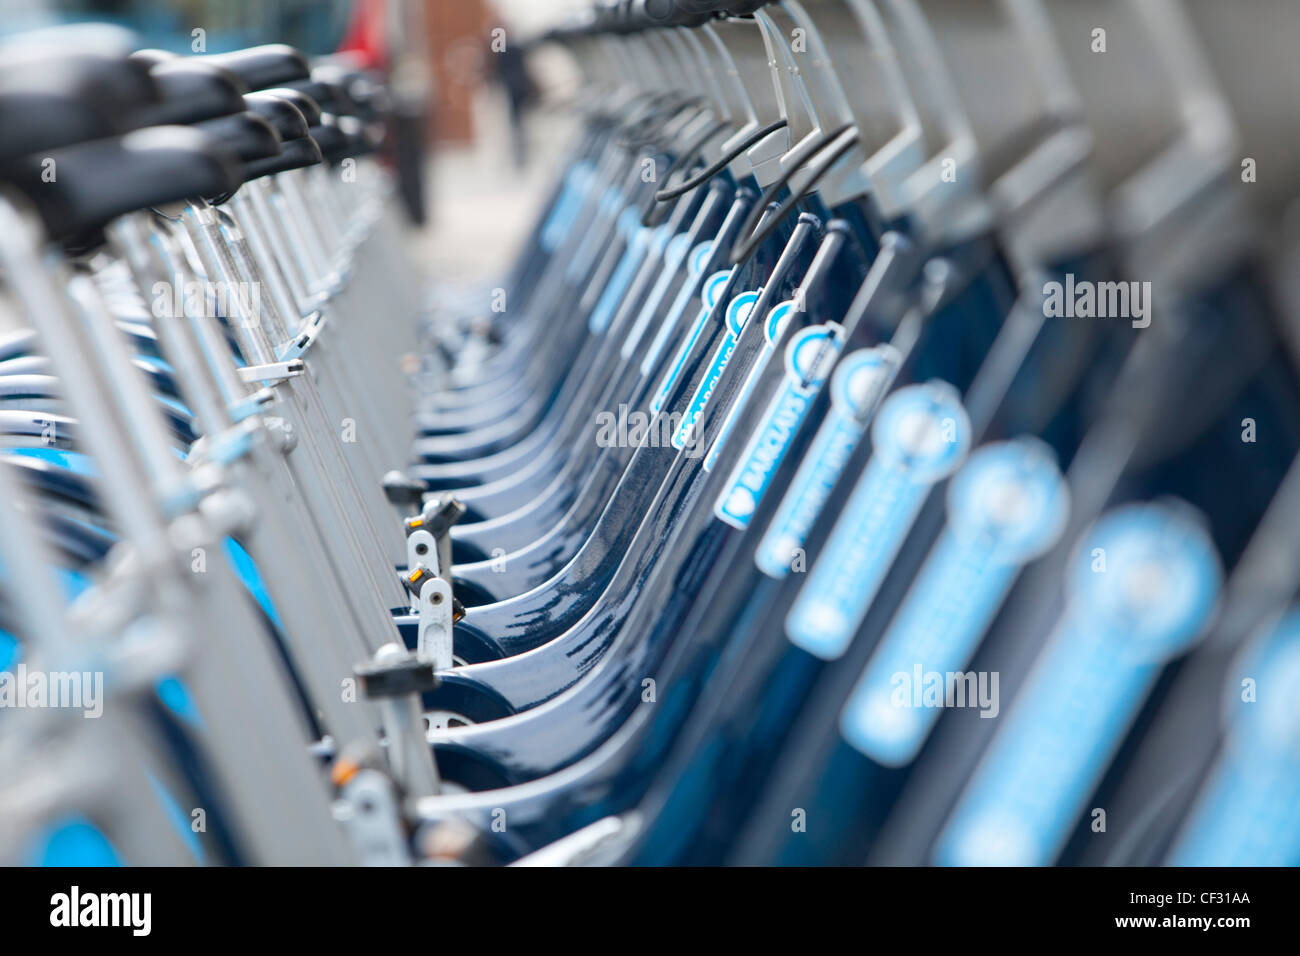 Vue d'une rangée de Barclays Cycle Hire Scheme des vélos à leur station d'accueil Banque D'Images